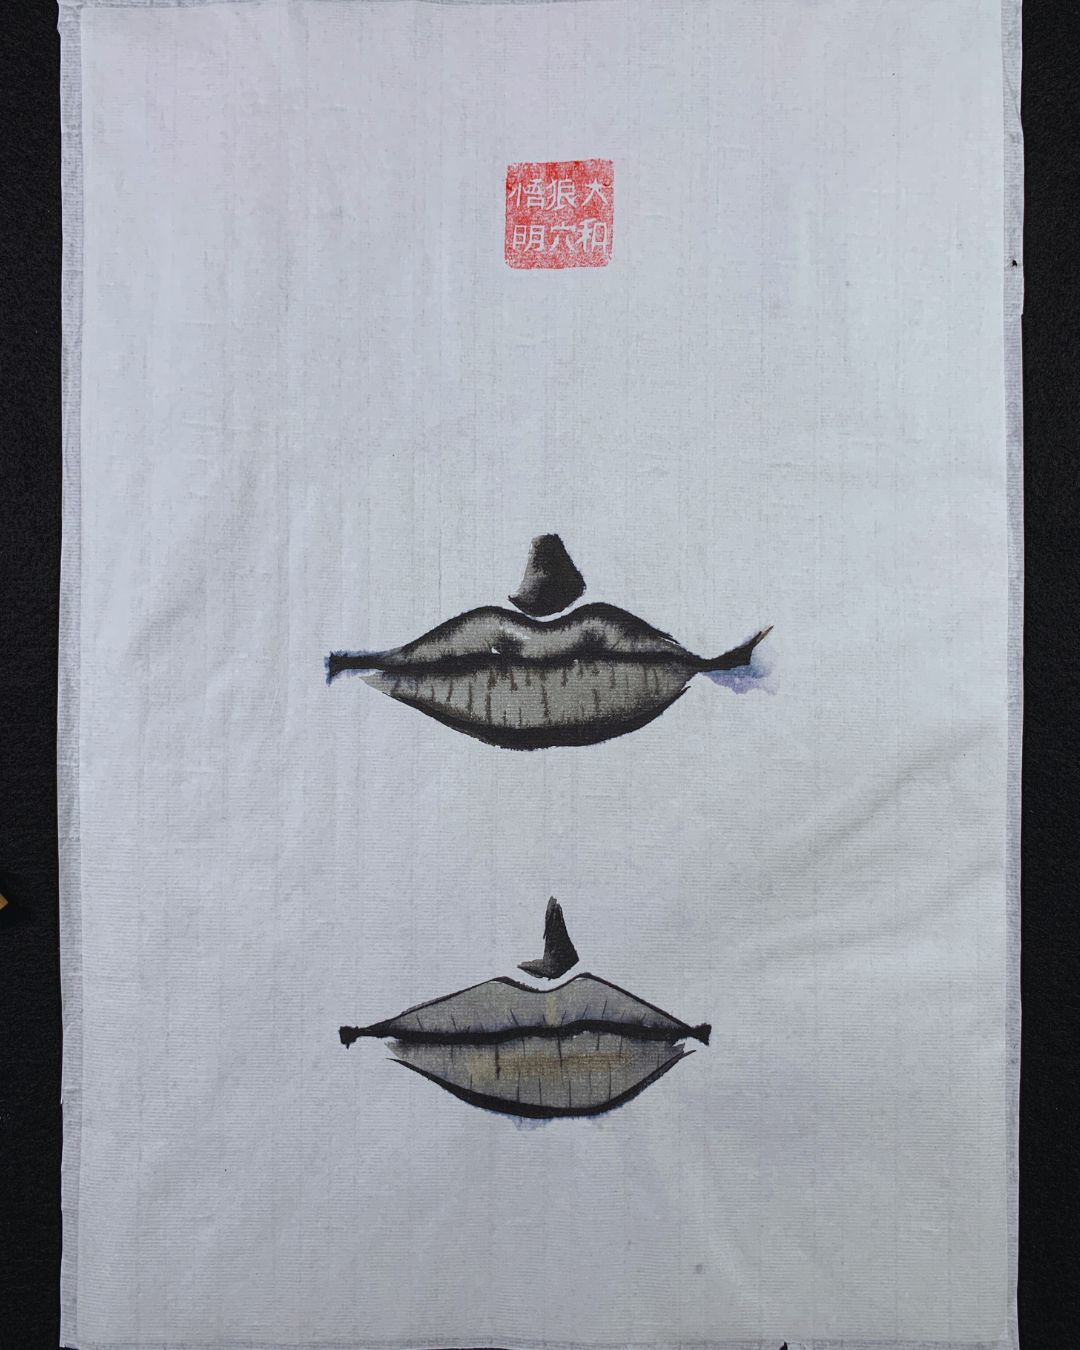 Palabra. Serie Héroes. Sumi-e. Tinta china sobre papel de arroz. David Lopera Gómez. Pintura de unos labios encima de otros.